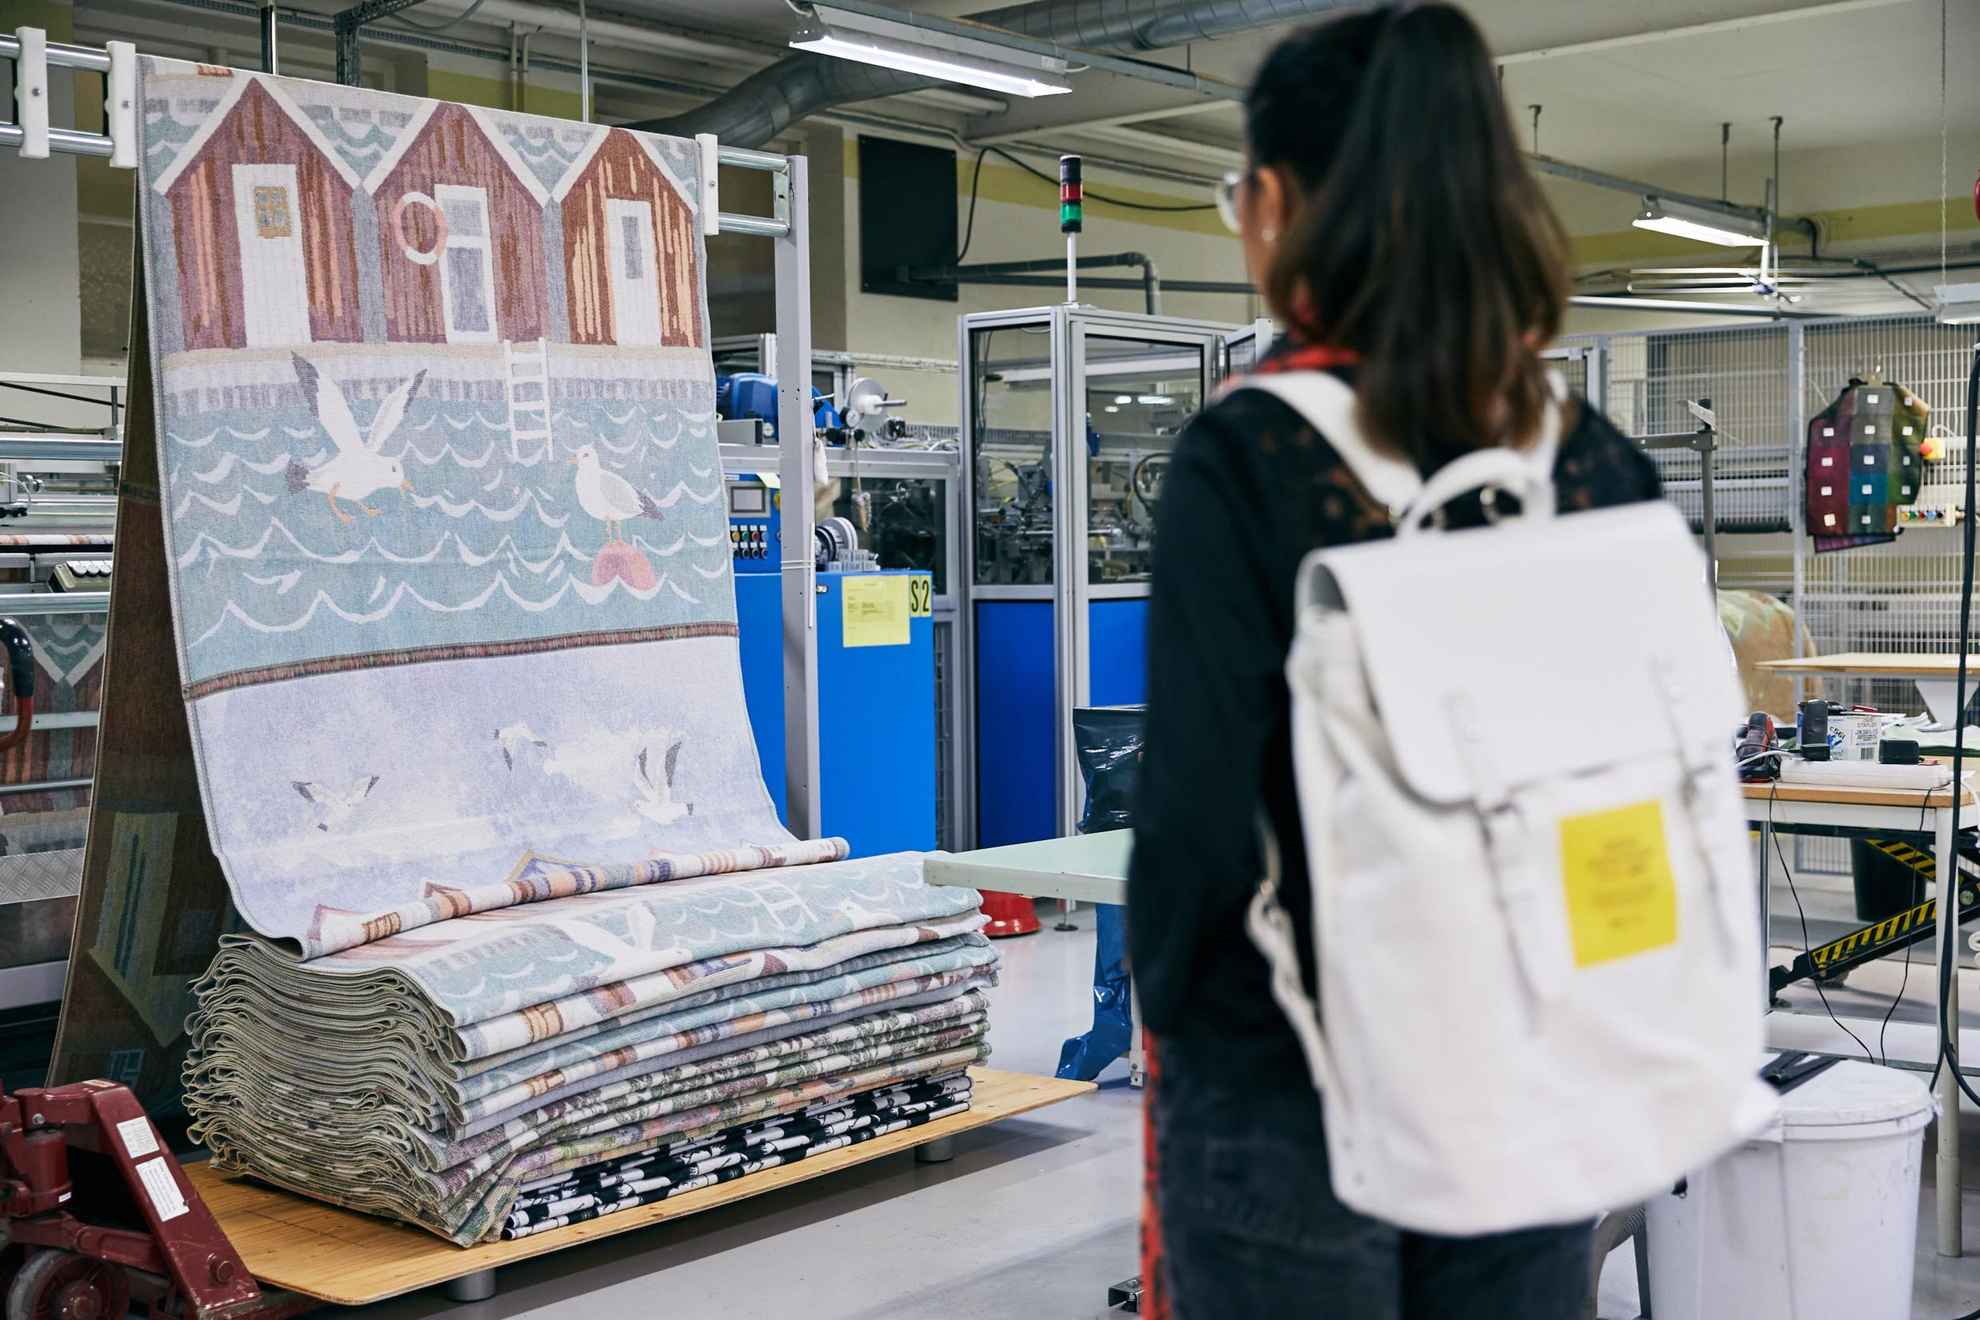 Une femme avec un sac à dos visite une usine de tissage et regarde un tissu avec des cabanes rouges et des oiseaux. Le tissu est suspendu sur un support.